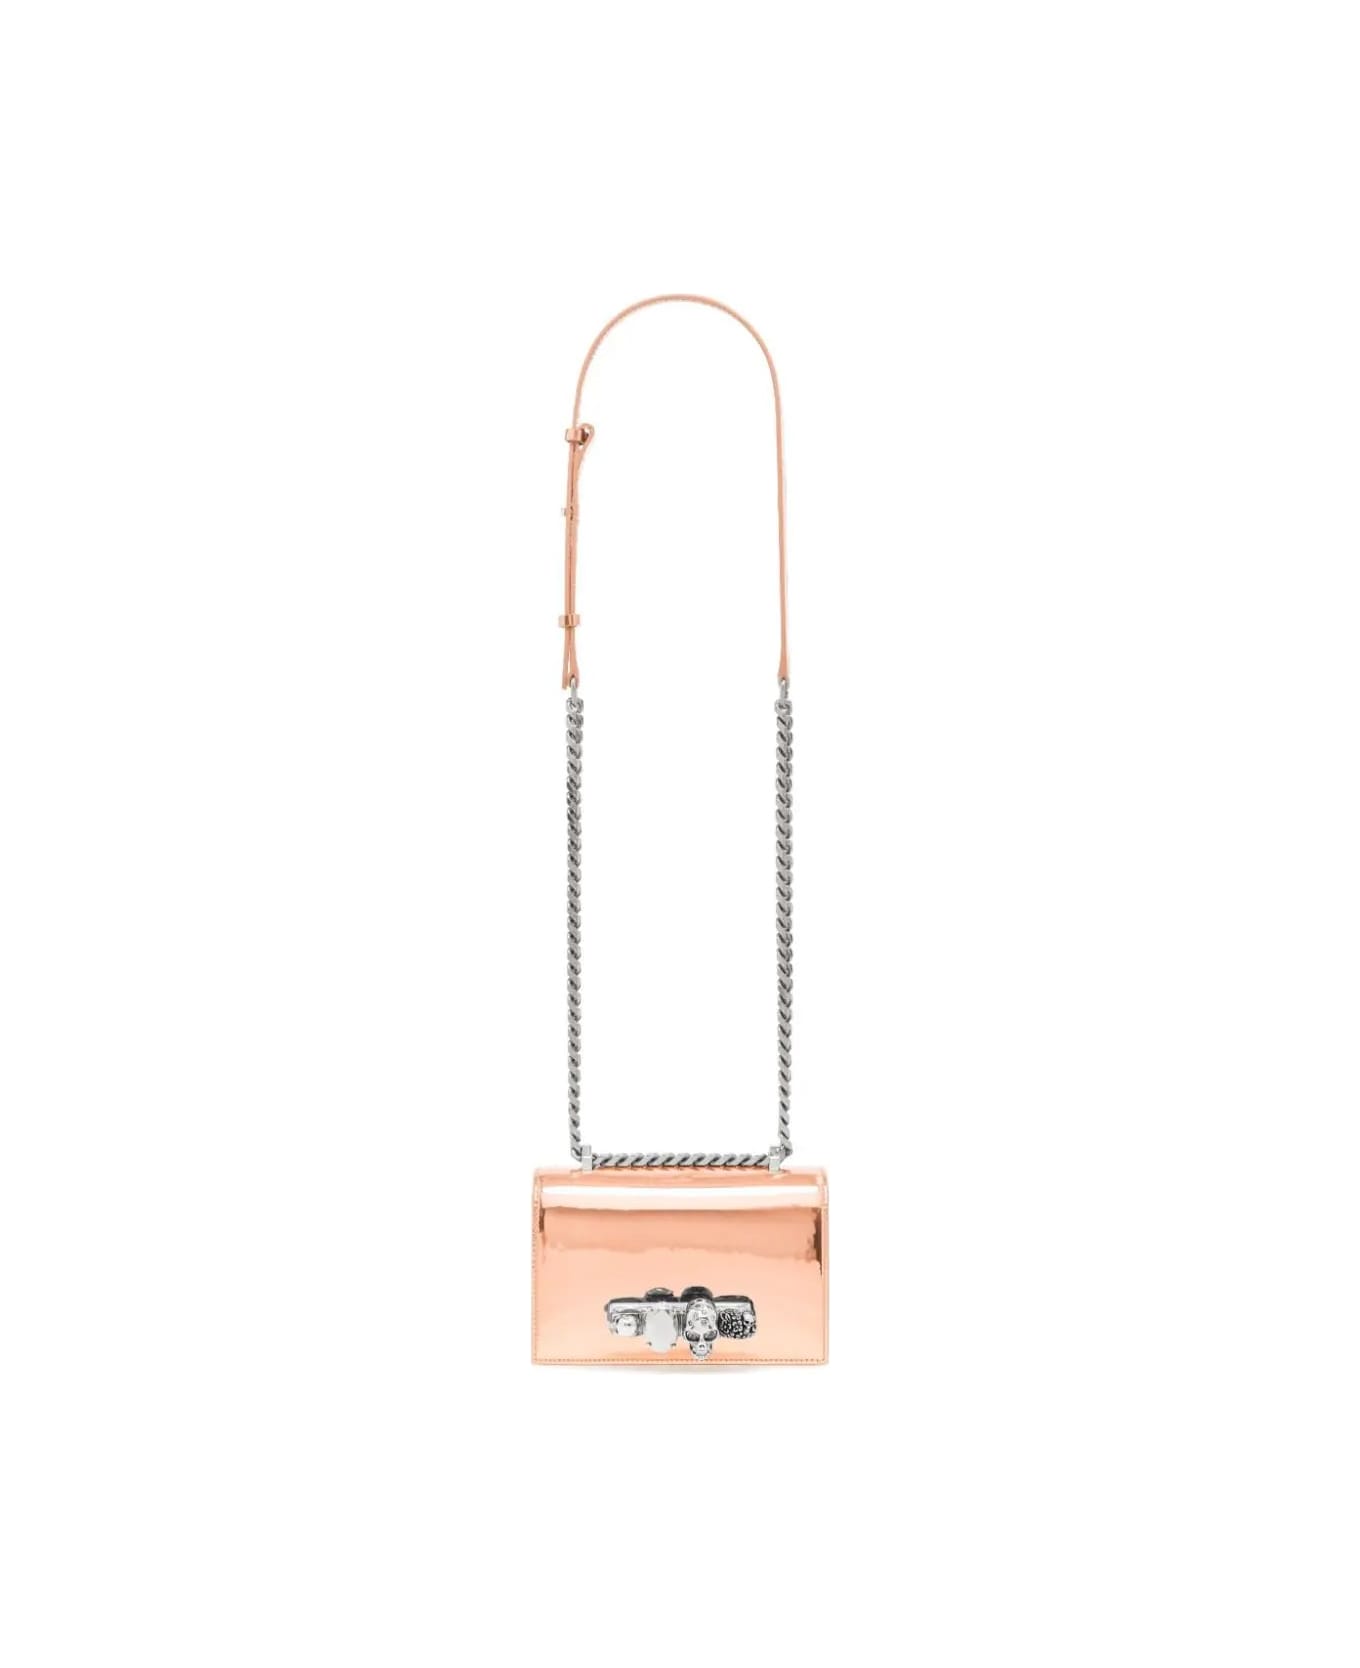 Alexander McQueen Mini Jewelled Satchel Bag In Copper - Copper